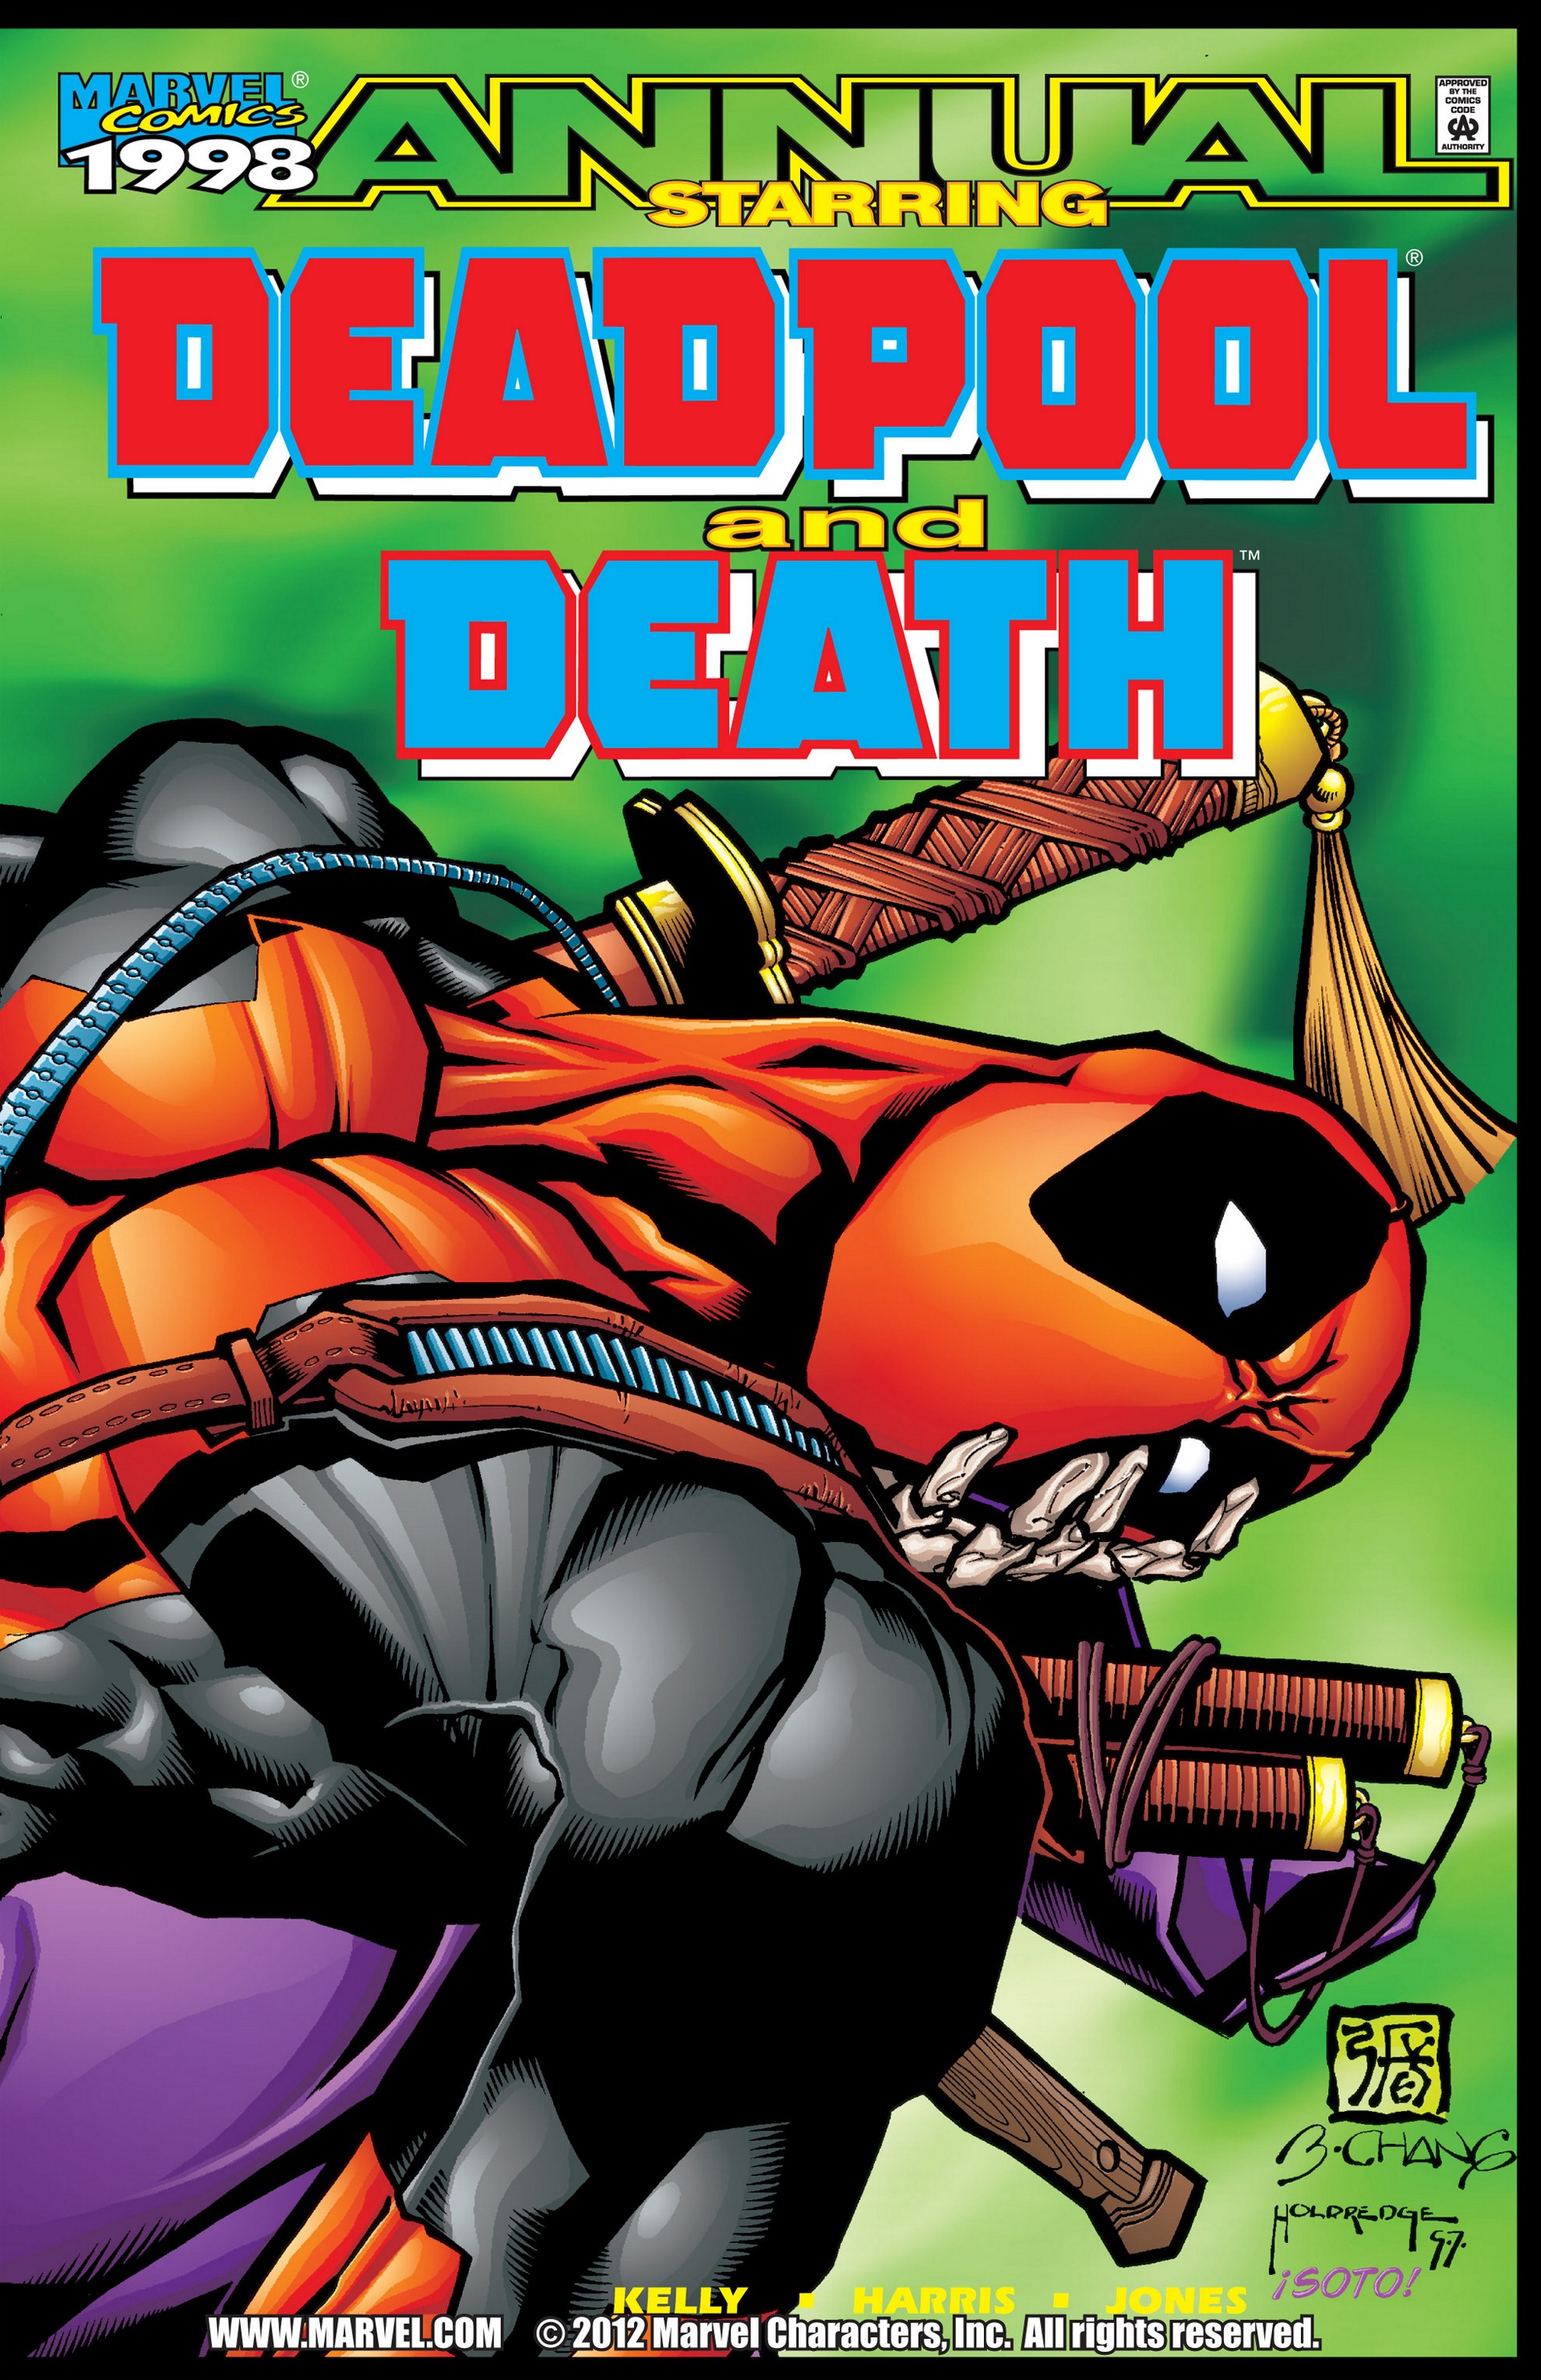 Death And Deadpool Porn - Deadpool Death 98 Full | Read Deadpool Death 98 Full comic online in high  quality. Read Full Comic online for free - Read comics online in high  quality .